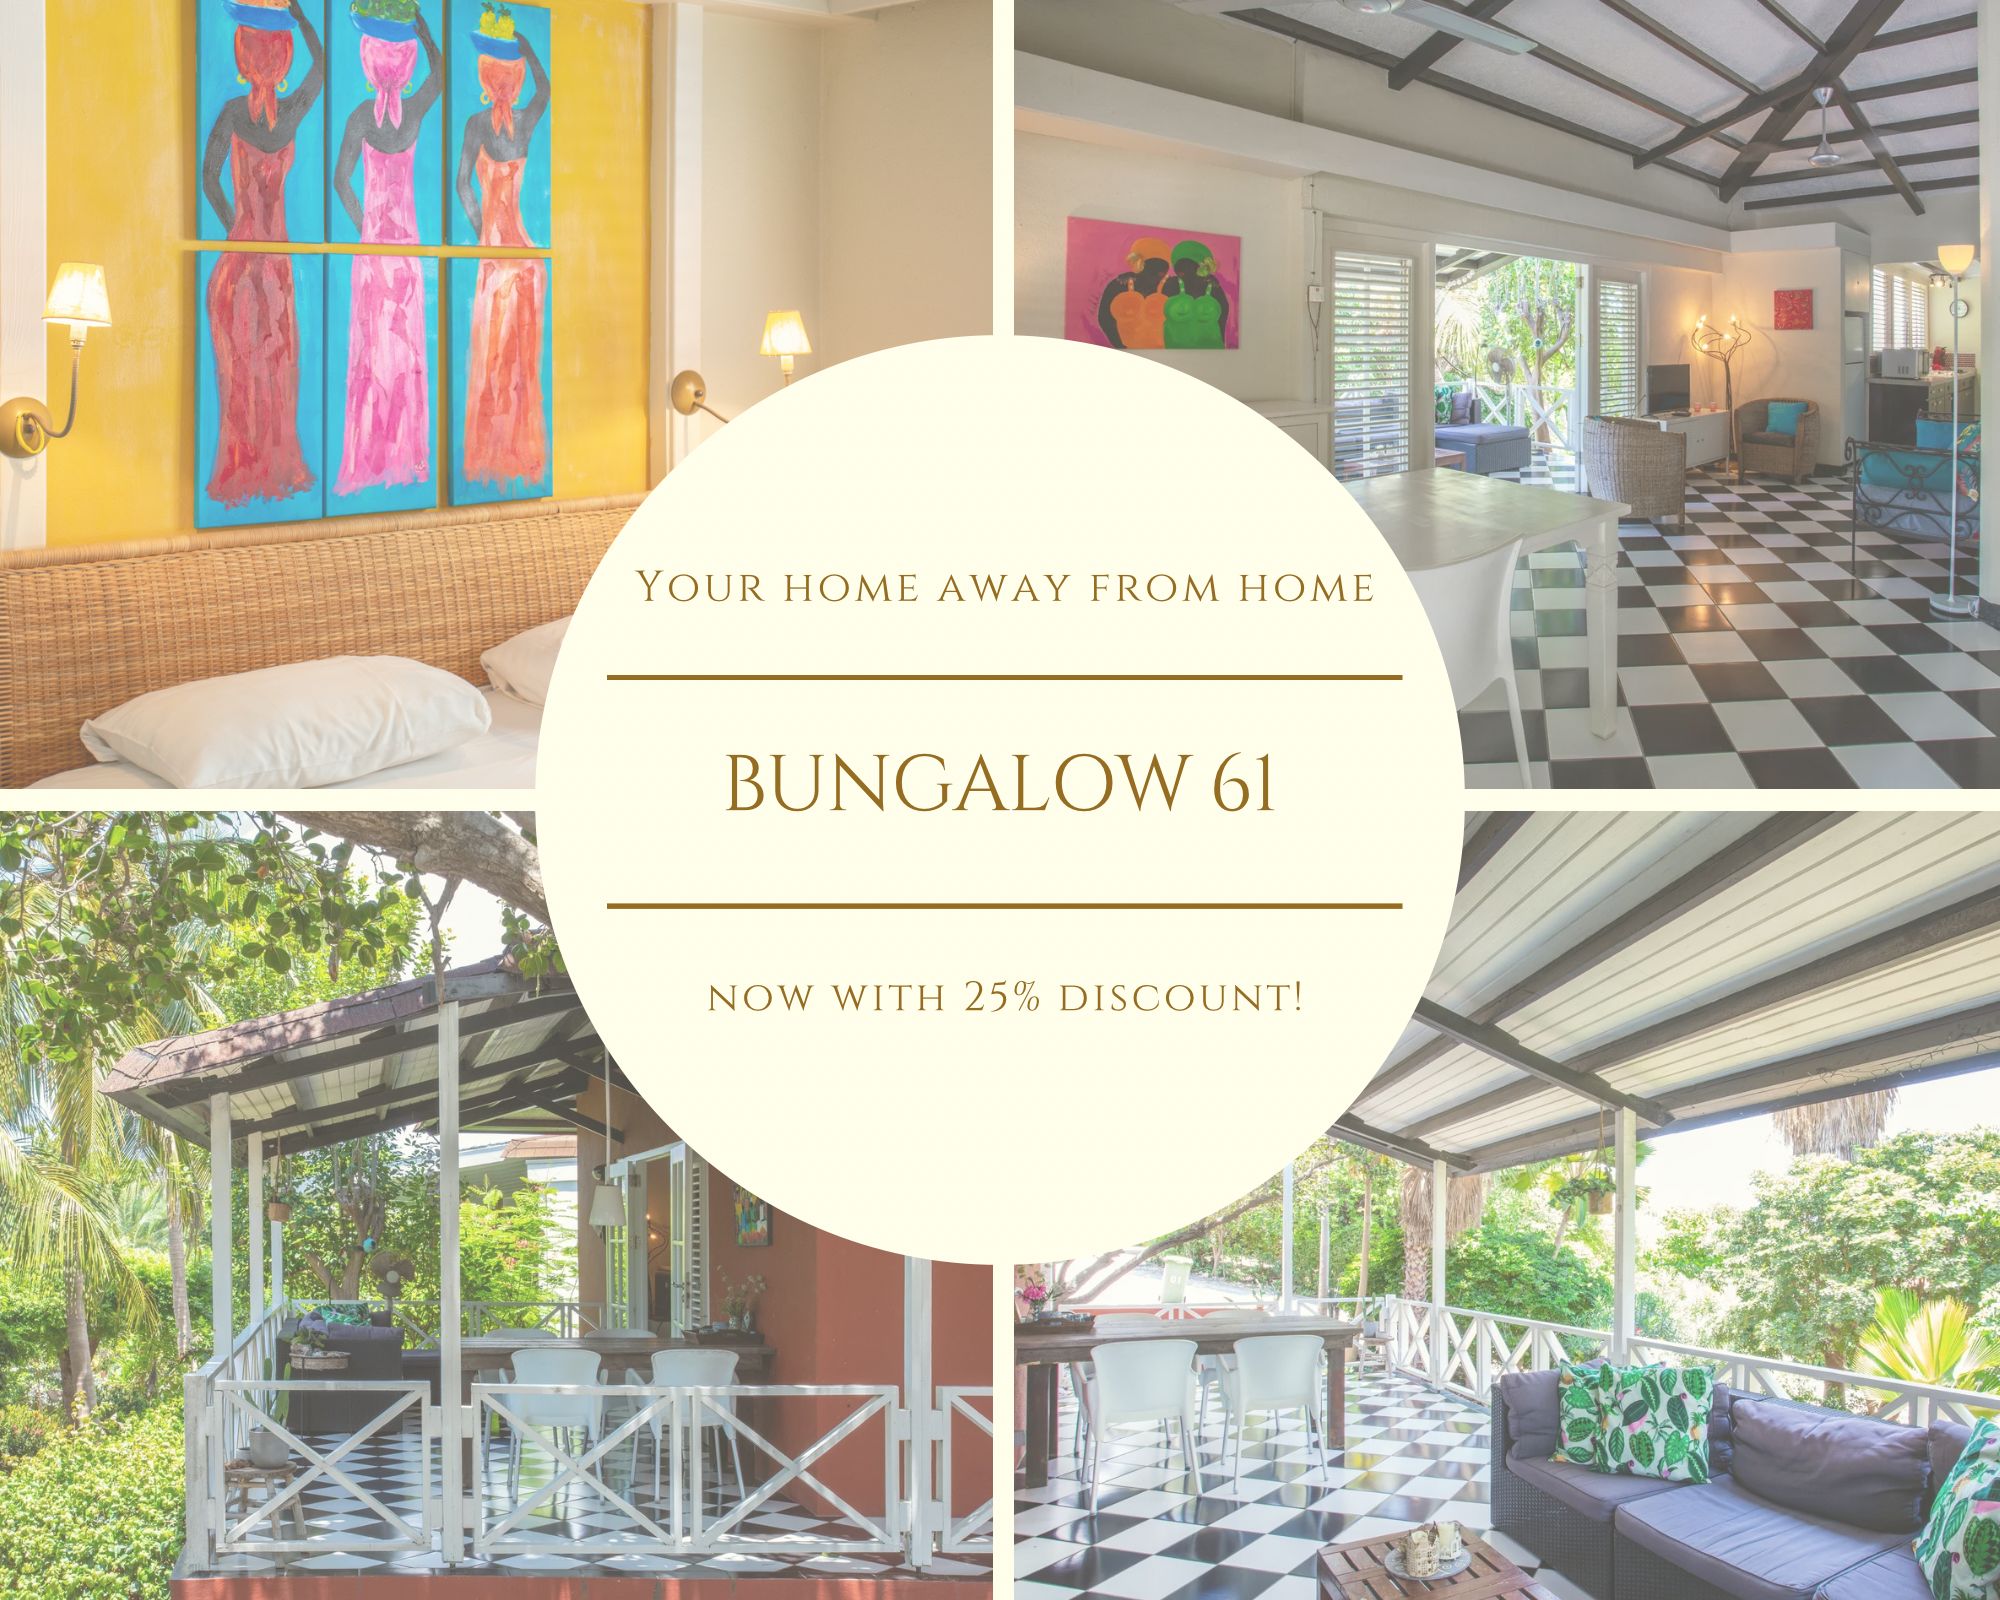 bungalow 61 korting 25%